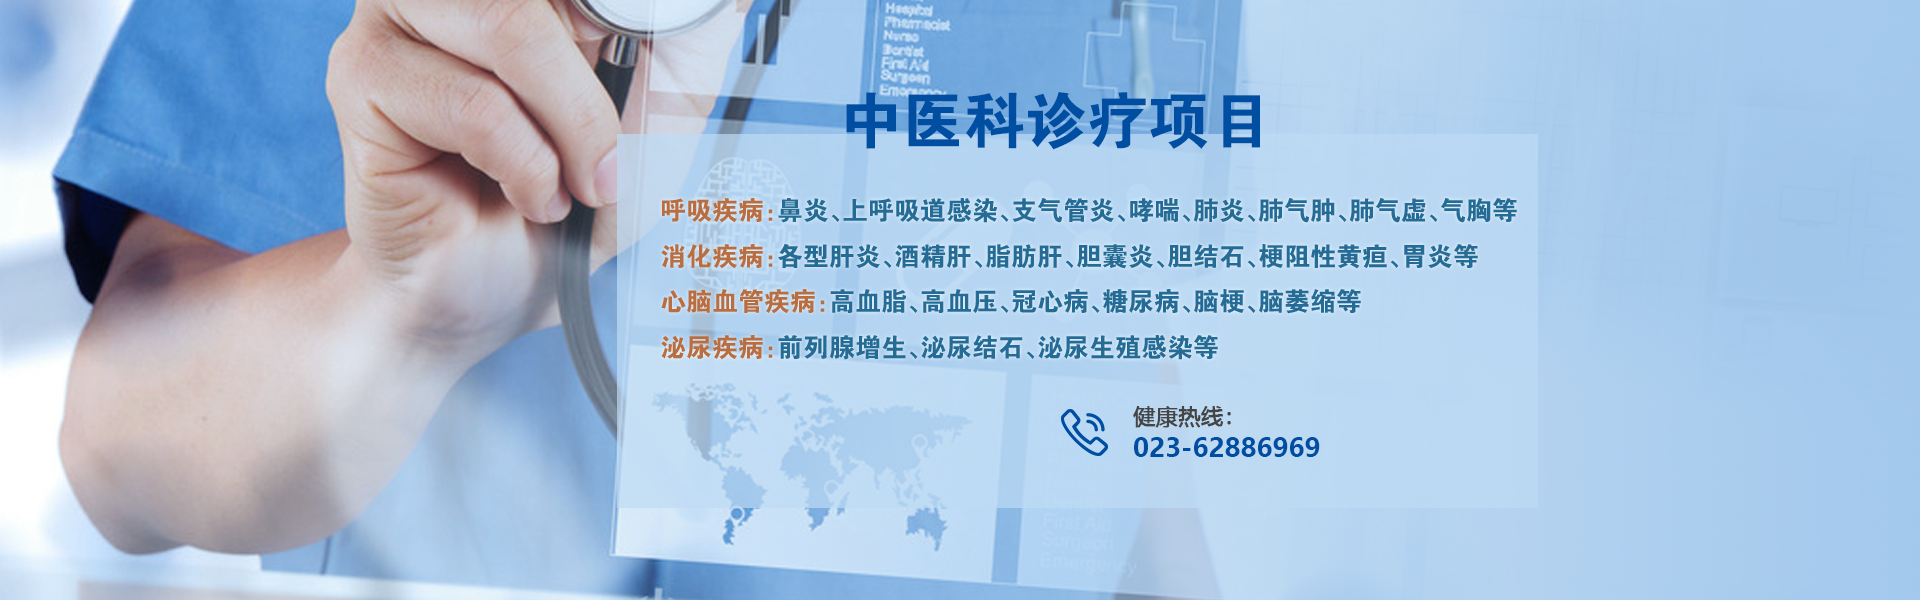 重庆中西医结合医院地址